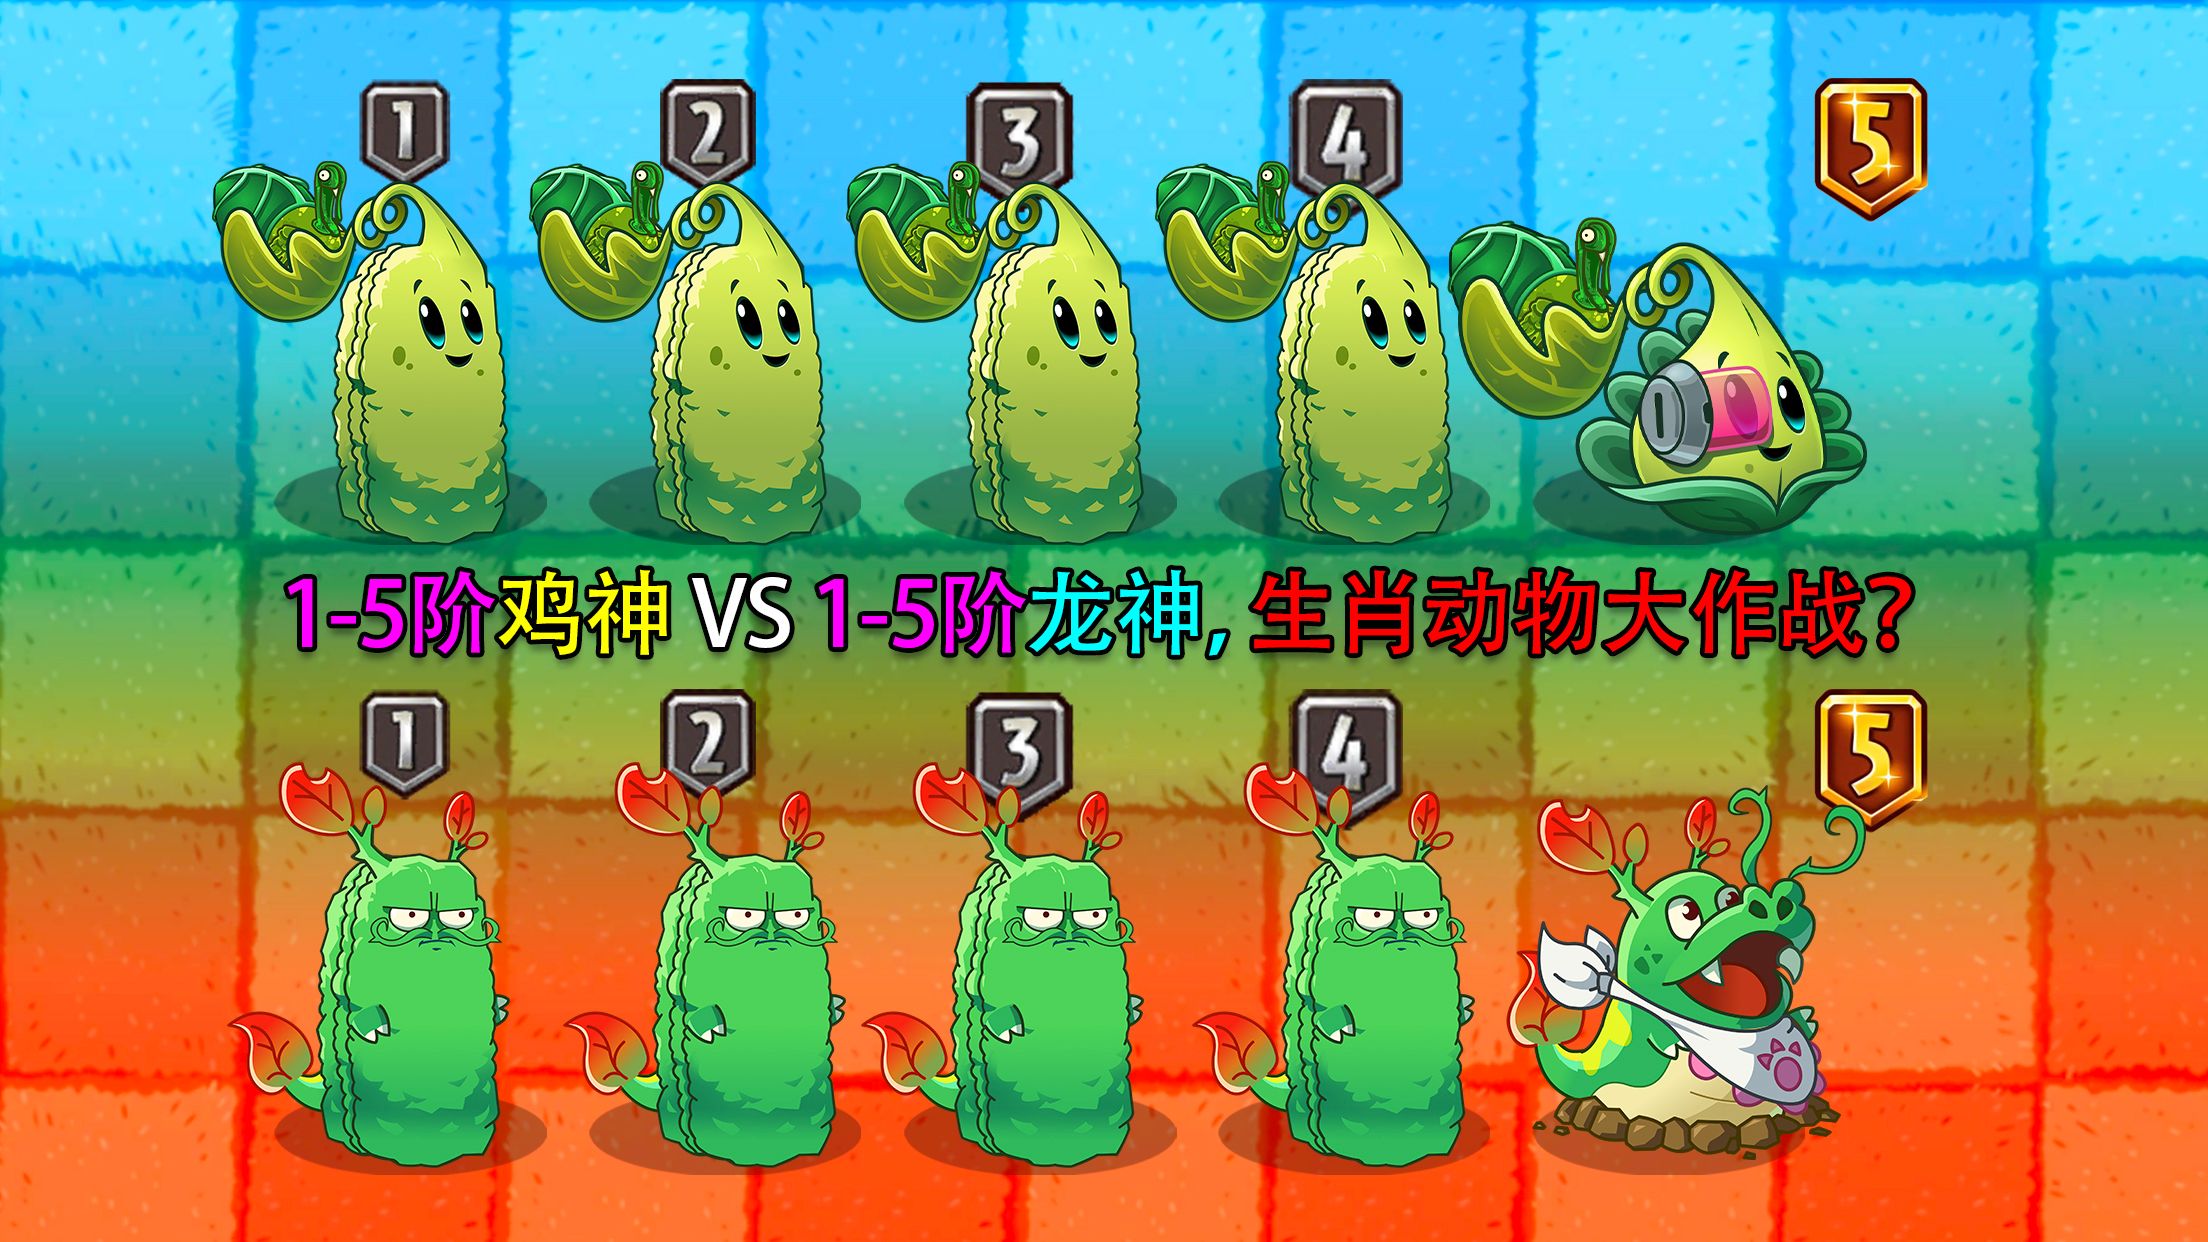 1-5阶鸡神 VS 1-5阶龙神，2个强力生肖植物差距有多大？